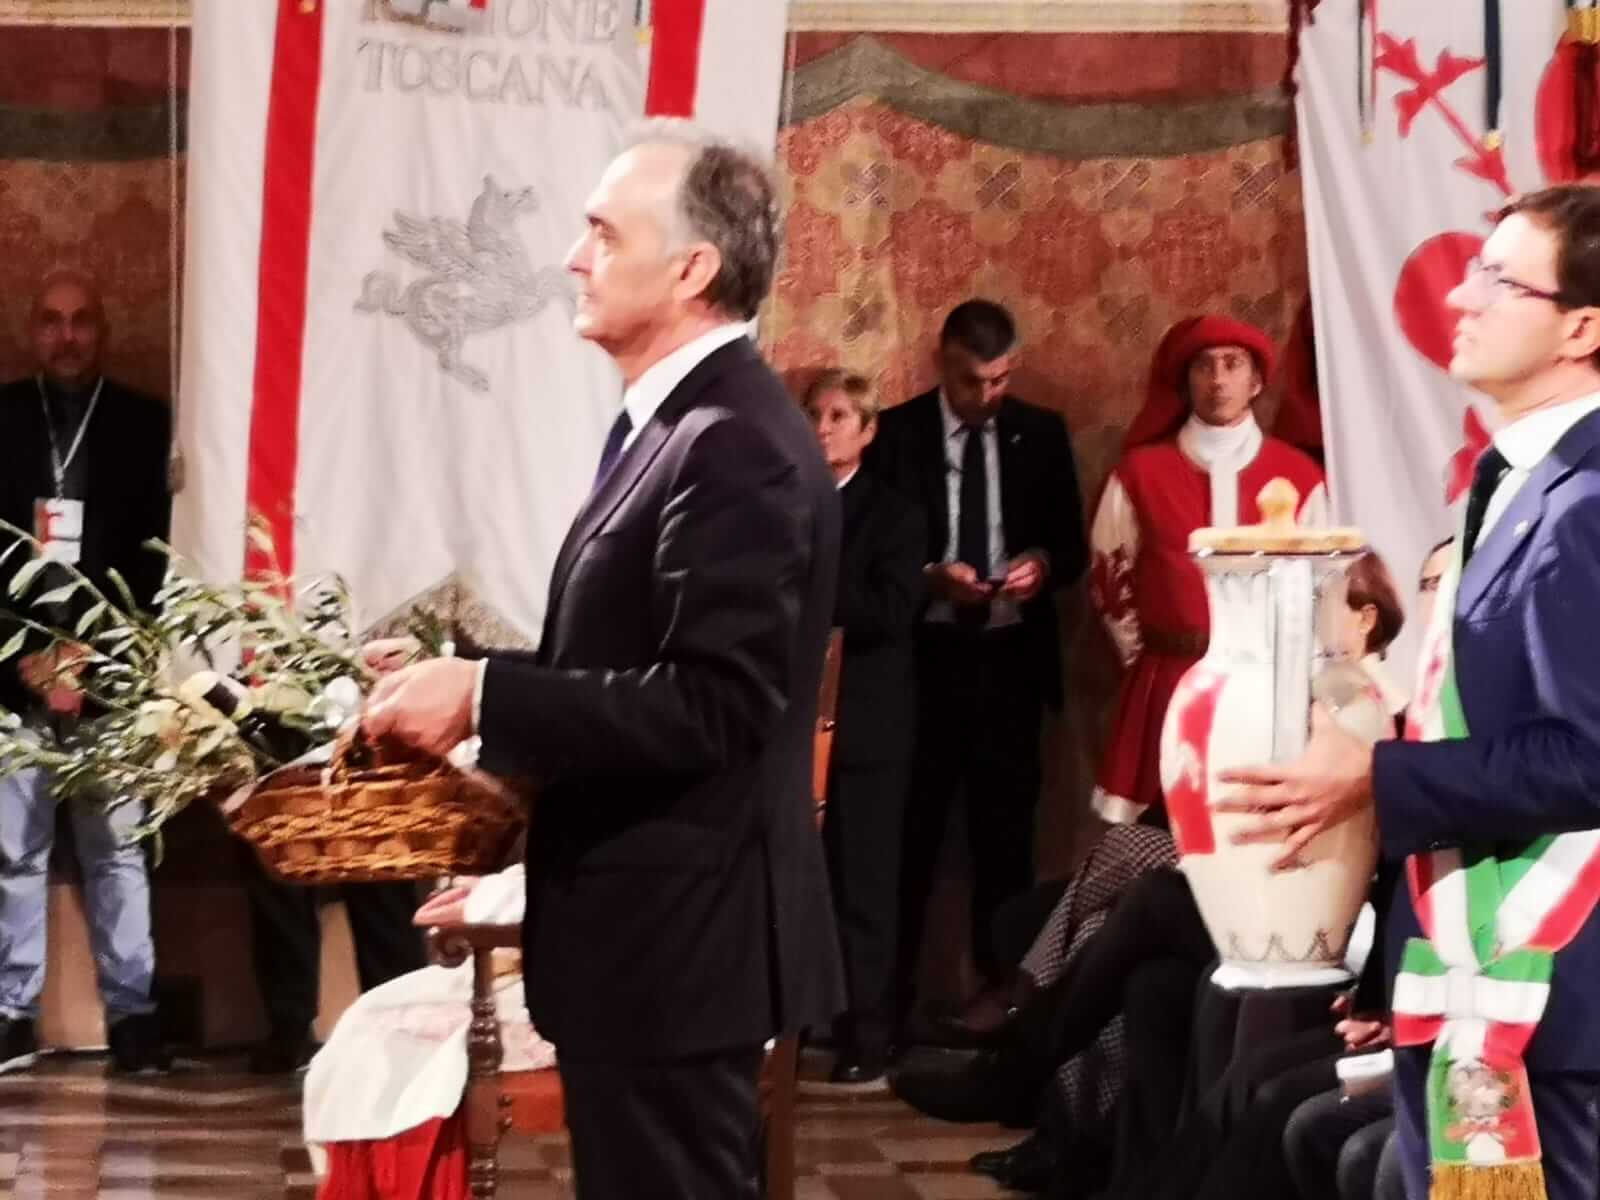 Rossi ad Assisi: “San Francesco ci insegna che senza radicalità non c’é cambiamento”